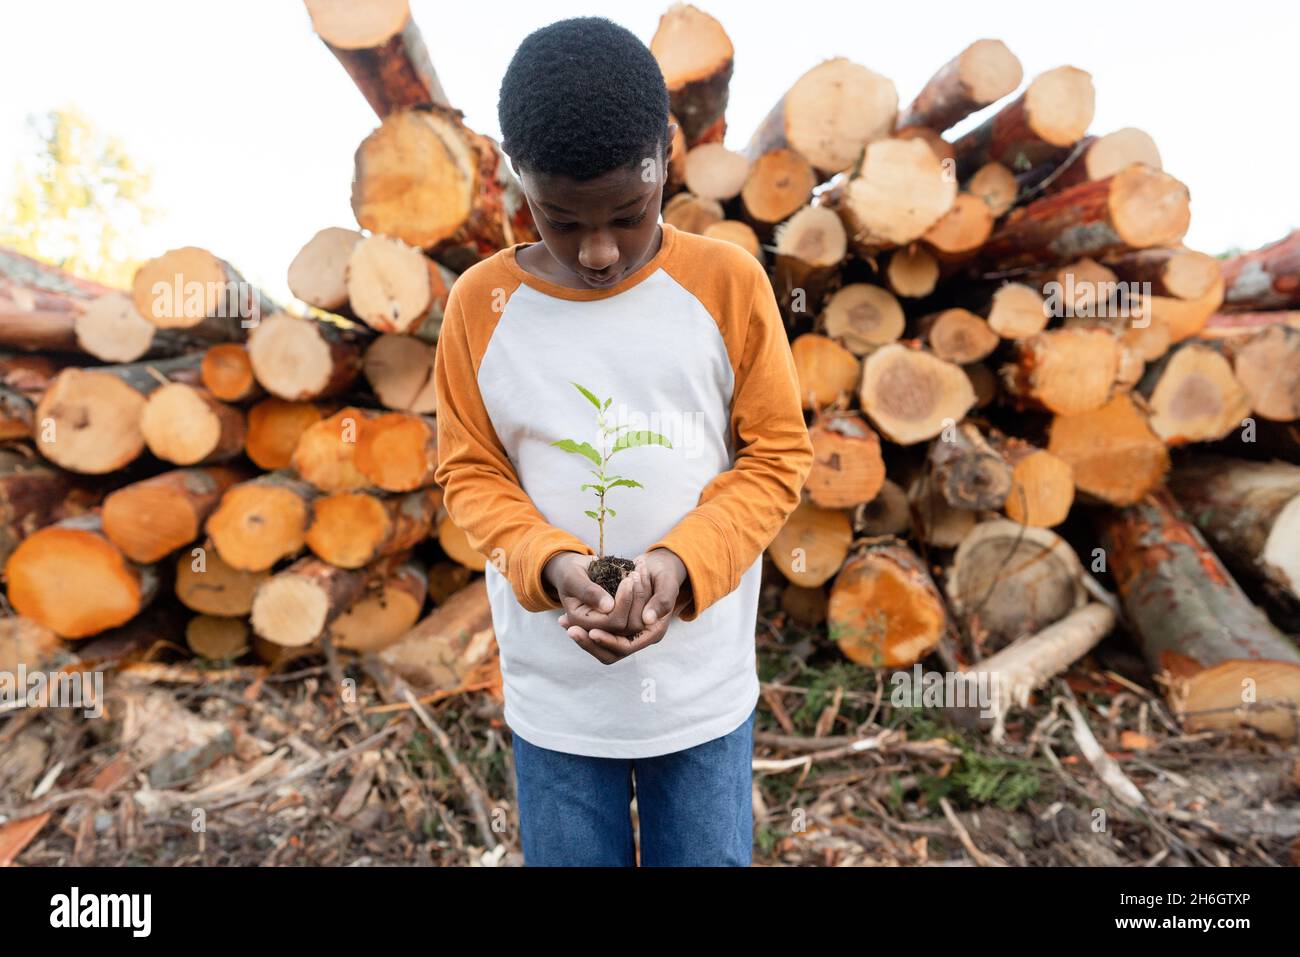 Der junge schwarze Junge steht vor einem Haufen von Baumstämmen und hält einen kleinen Baumkater. Stockfoto